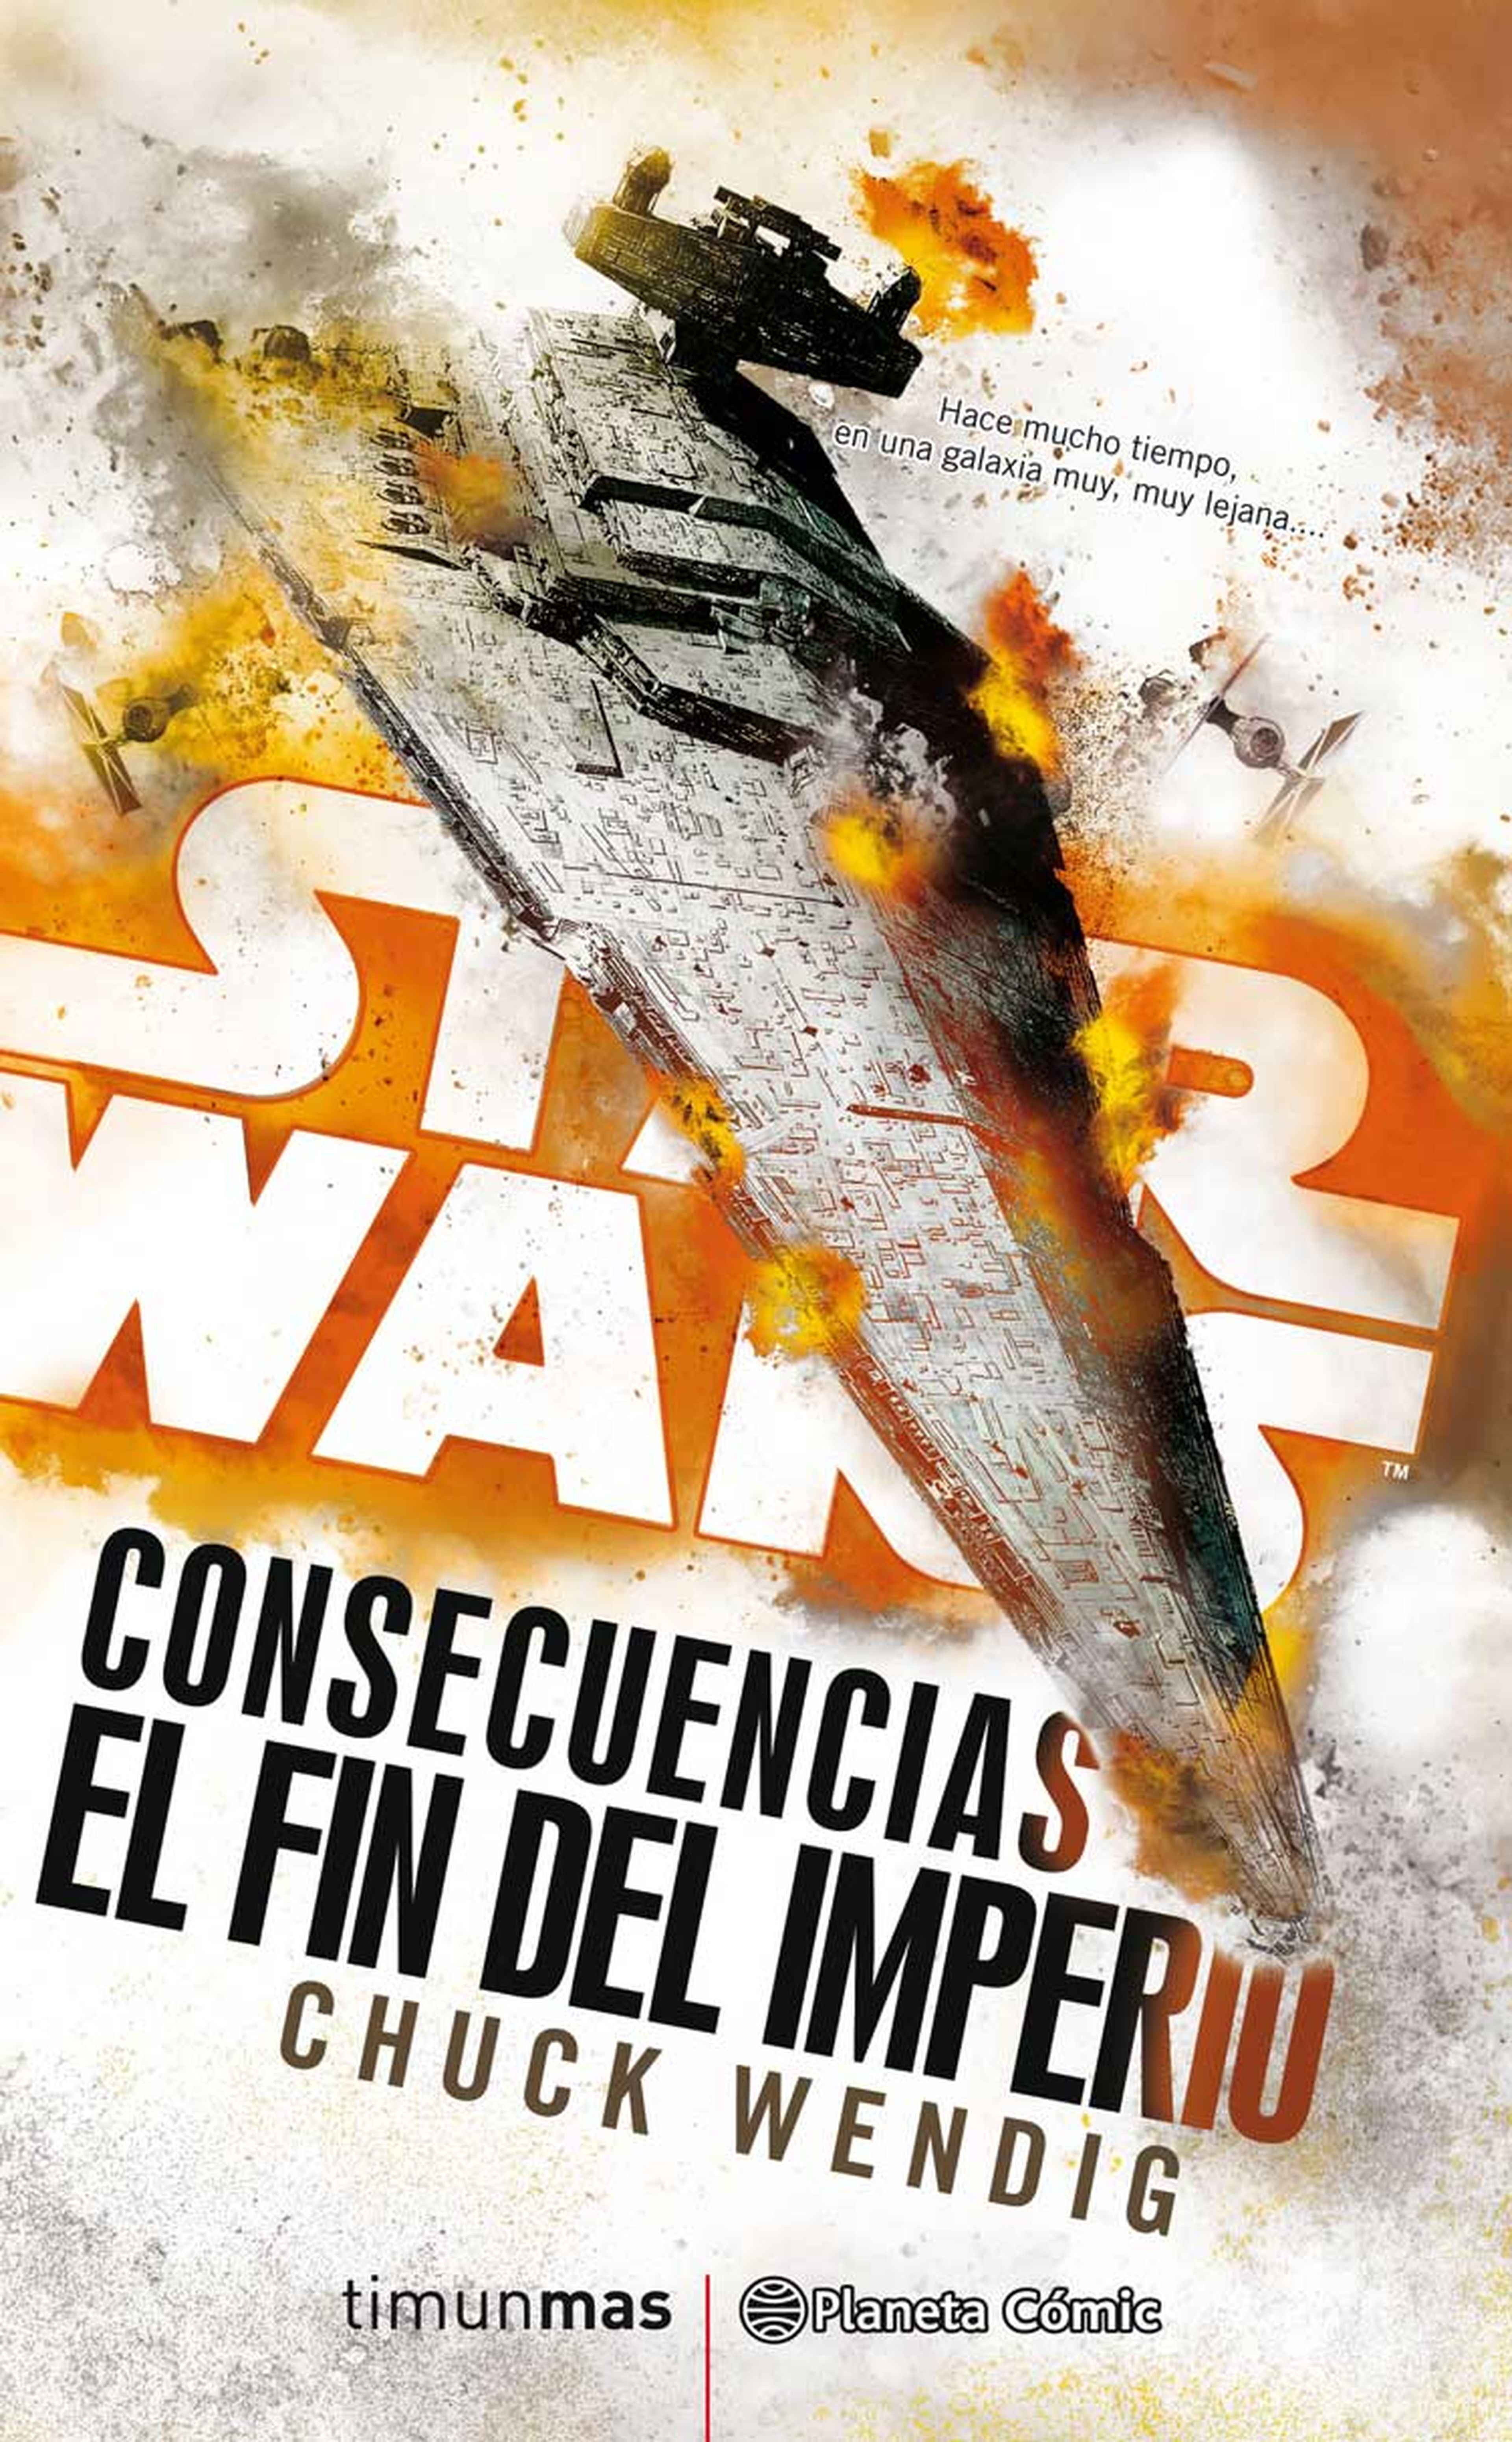 Star Wars Consecuencias: El Fin del Imperio